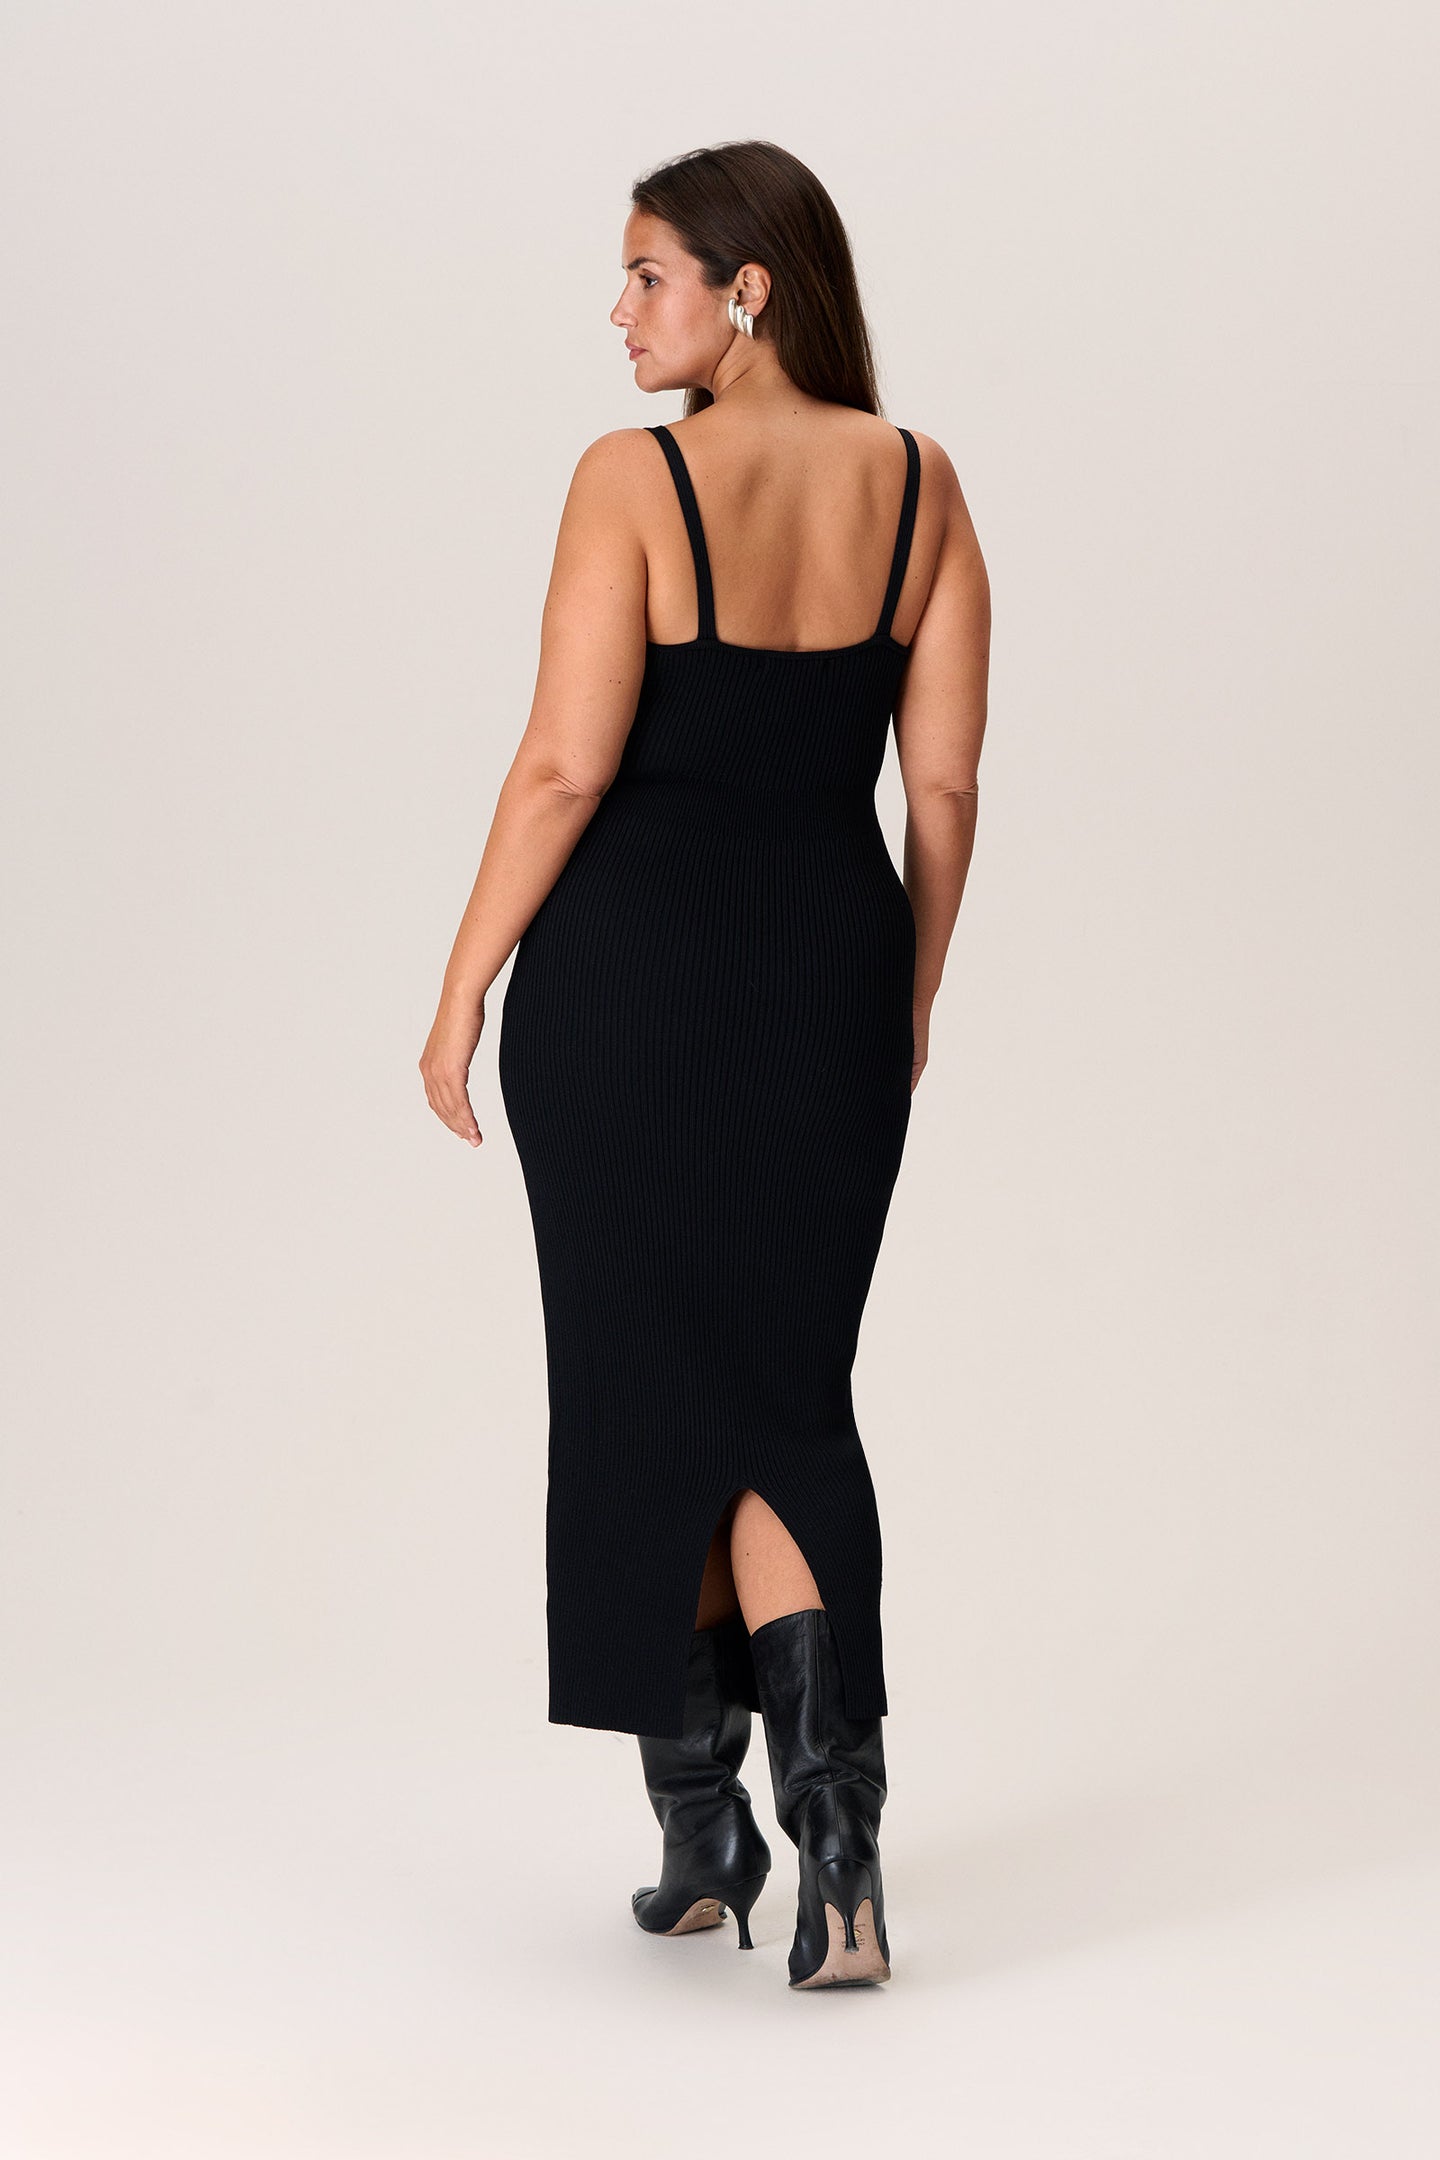 Slip dress in black – Shop knitted dress – adoore.se